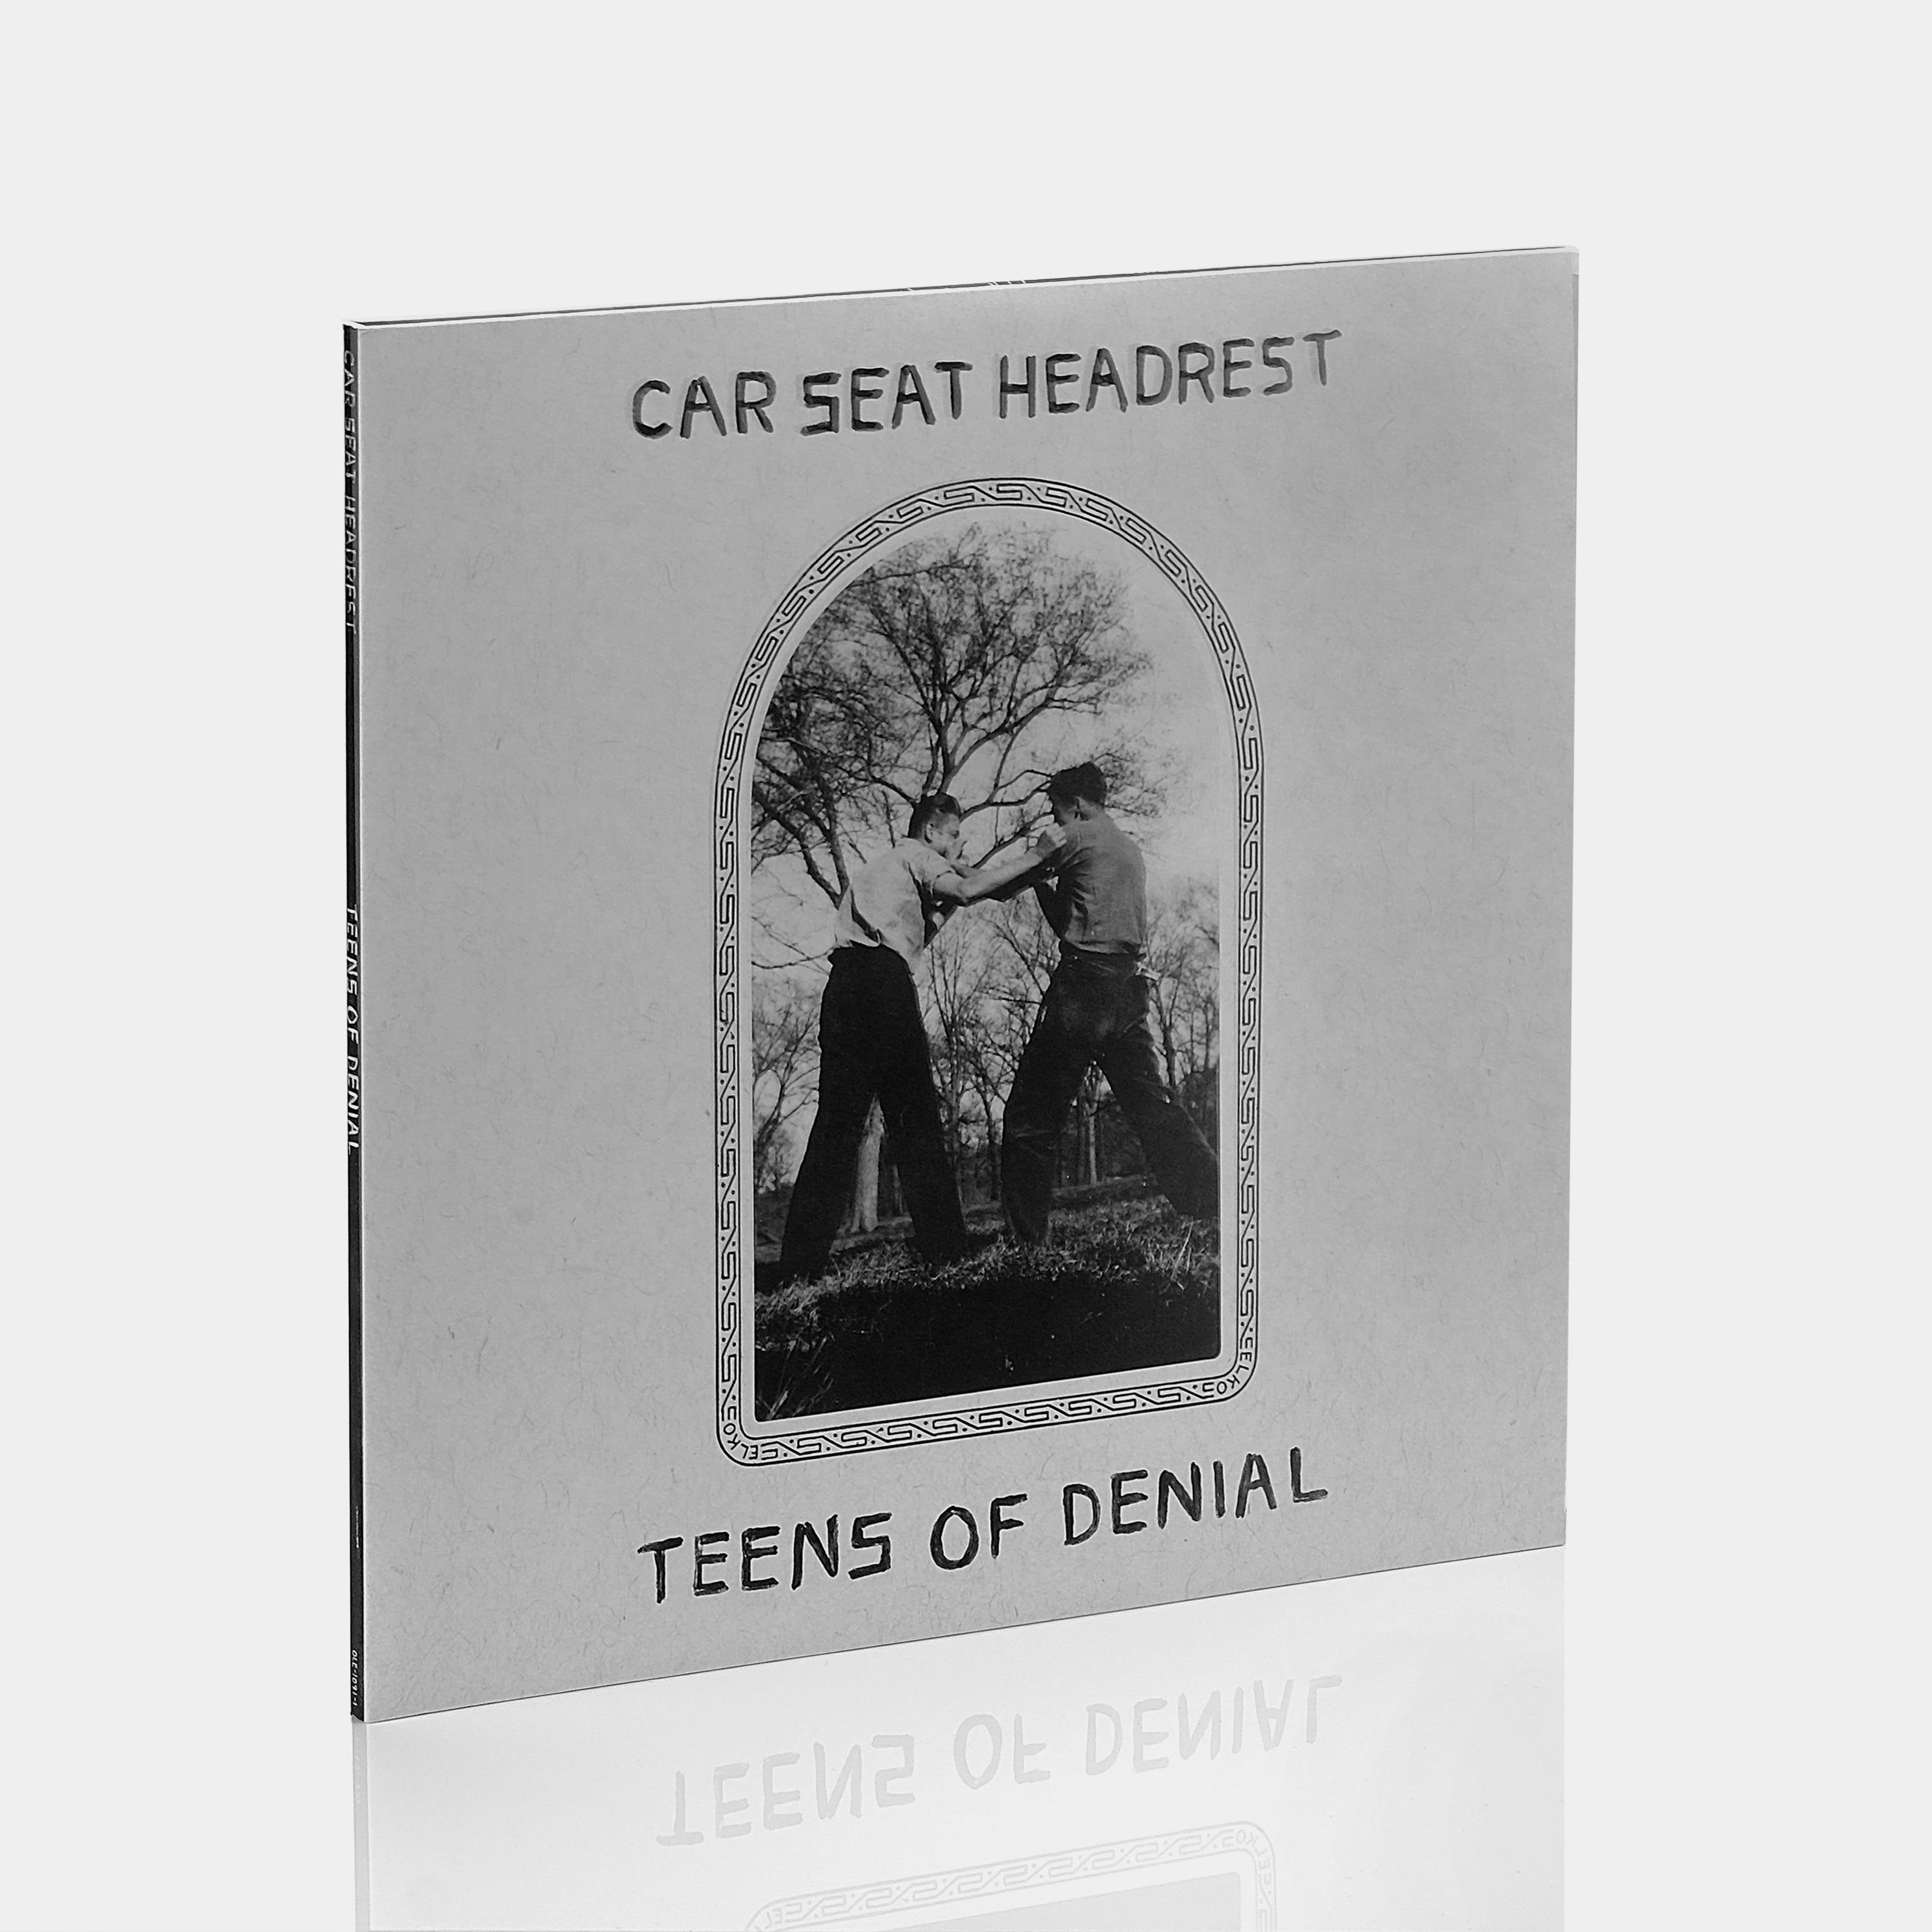 Car Seat Headrest - Teens Of Denial 2xLP Vinyl Record